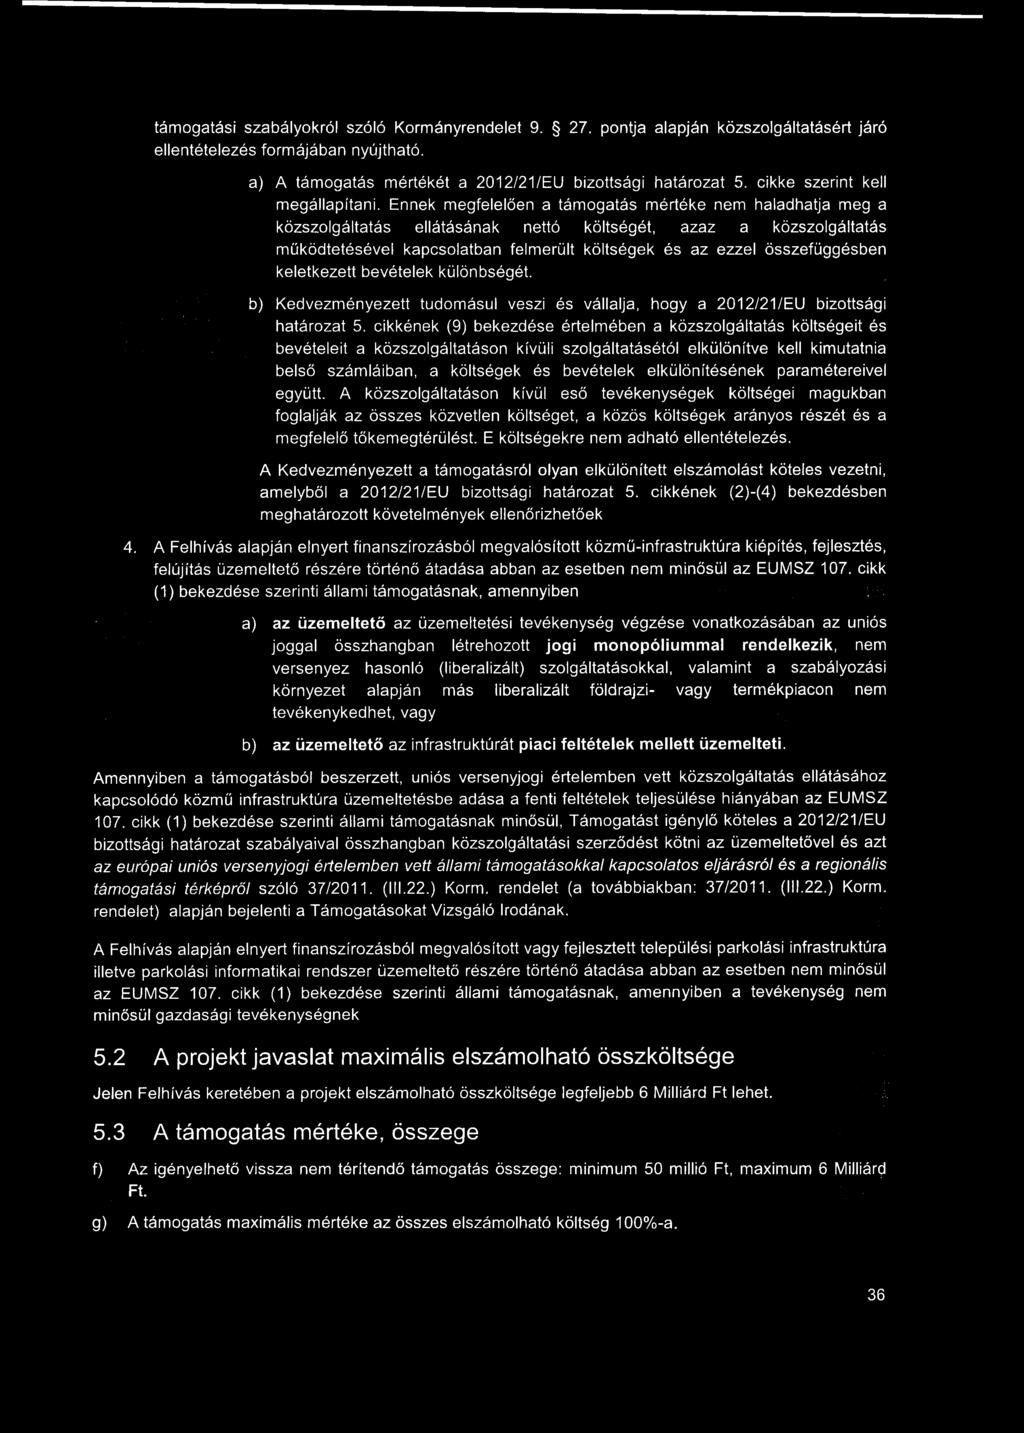 támogatási szabályokról szóló Kormányrendelet 9. 27. pontja alapján közszolgáltatásért járó ellentételezés formájában nyújtható. a) A támogatás mértékét a 2012/21/EU bizottsági határozat 5.